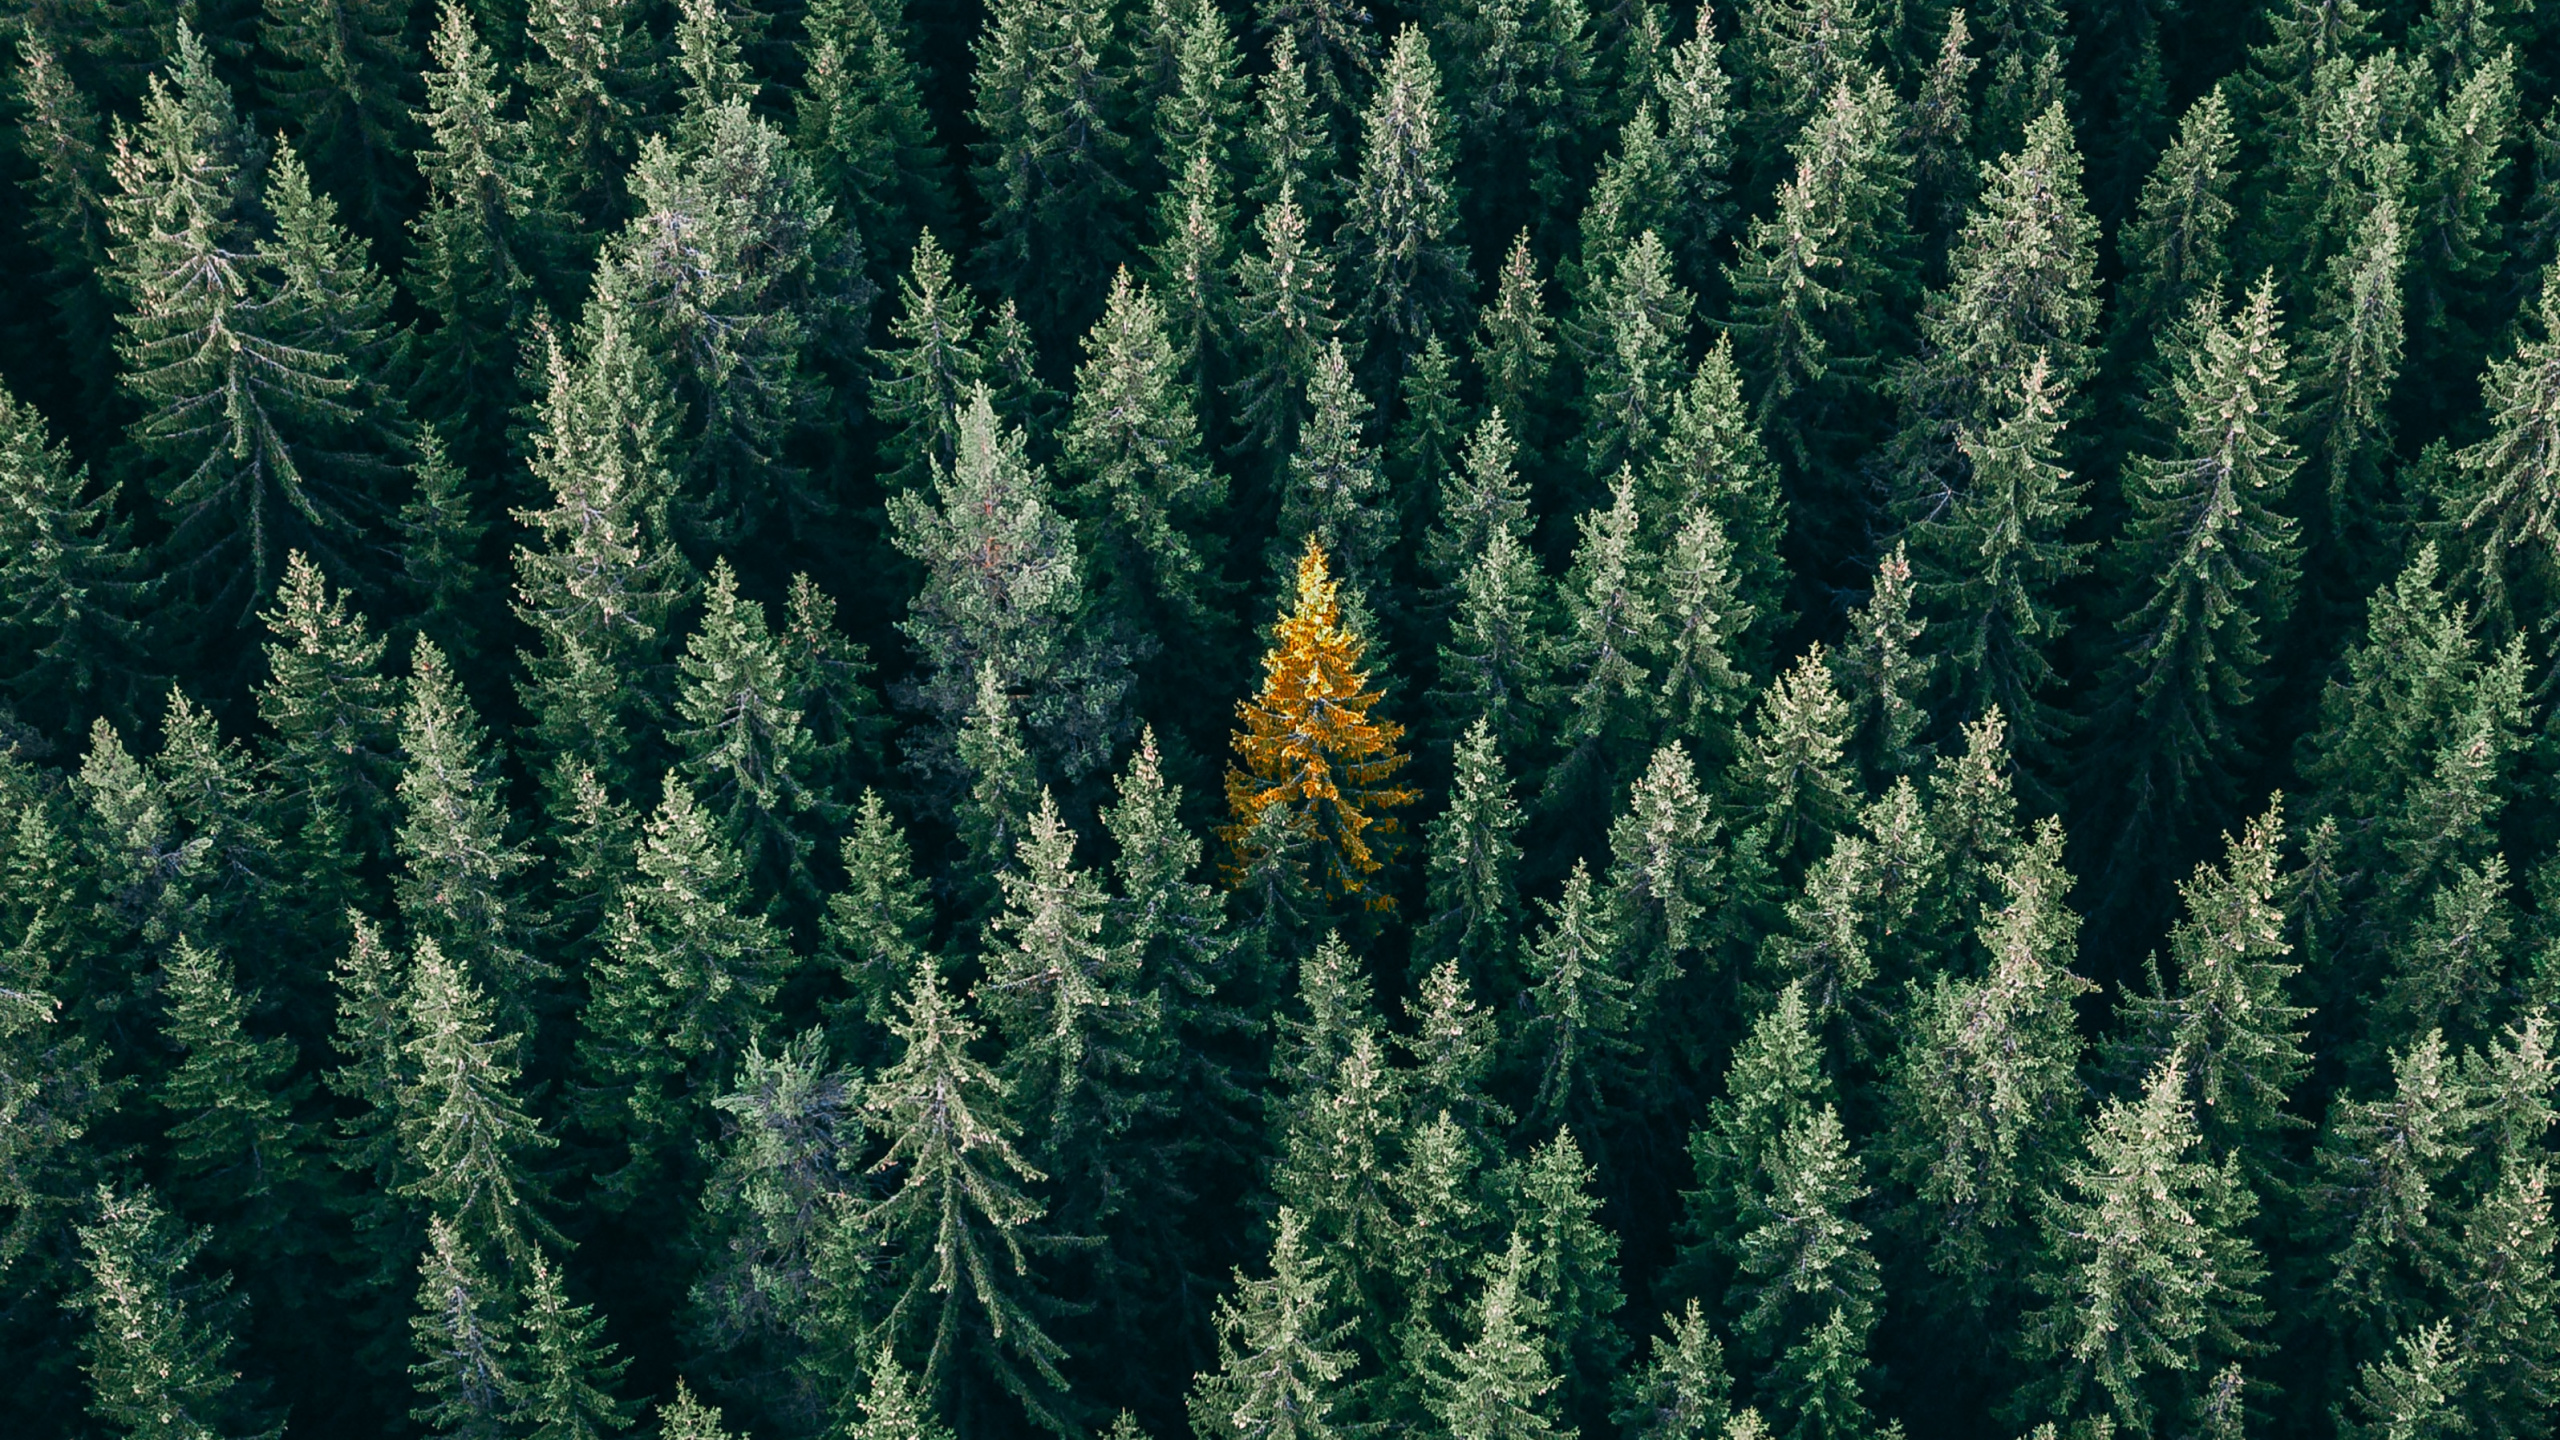 Vegetation, Columbian Spruce, Balsam Fir, Yellow Fir, Tree. Wallpaper in 2560x1440 Resolution